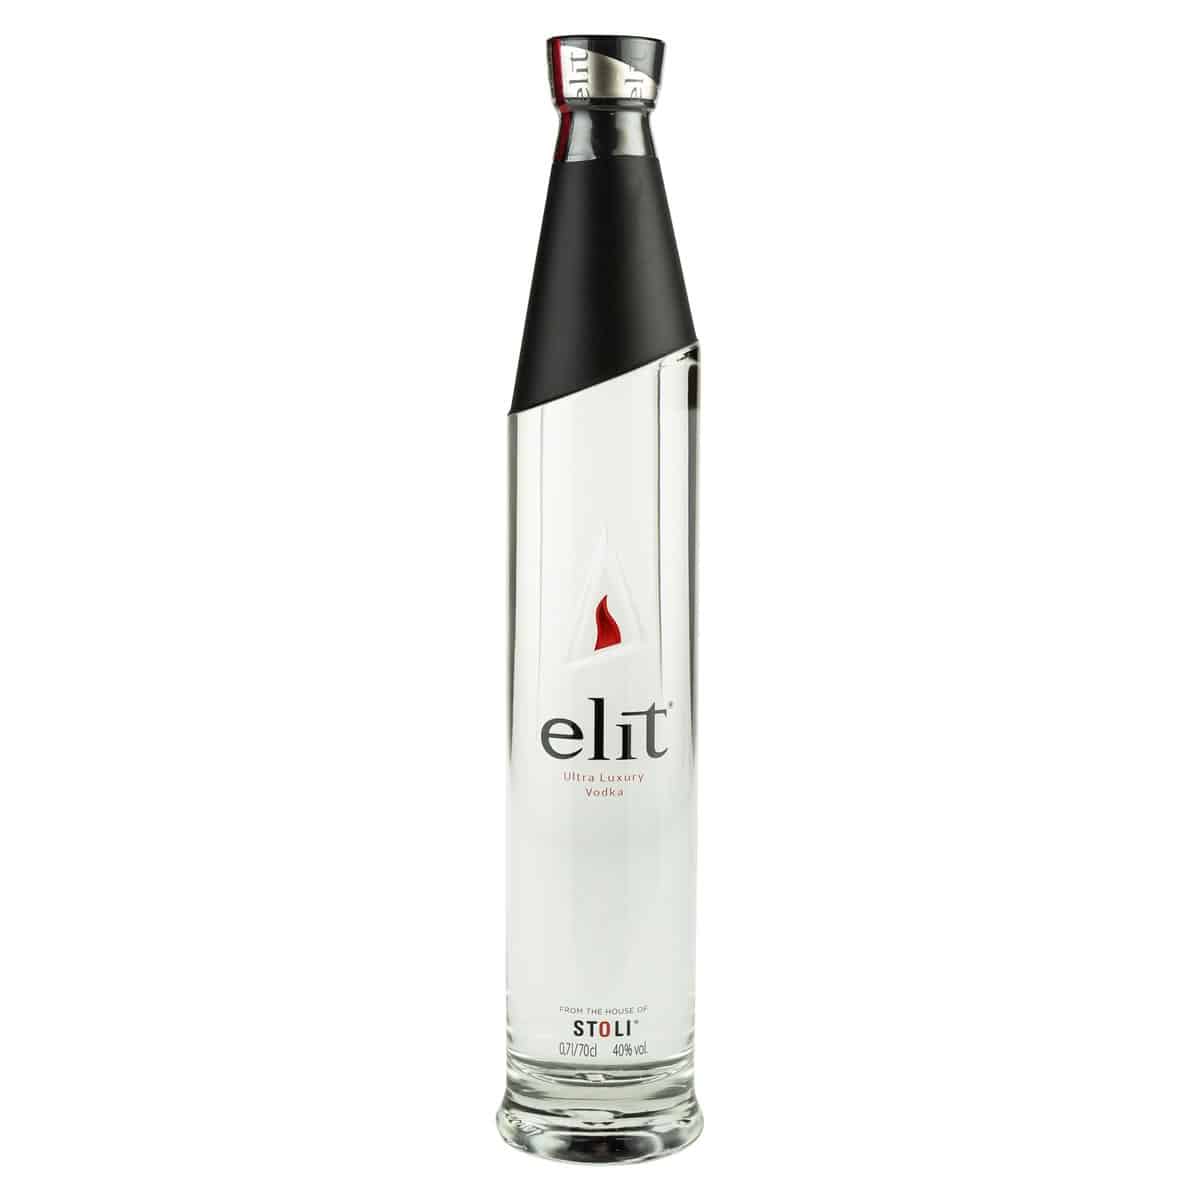 elit-vodka